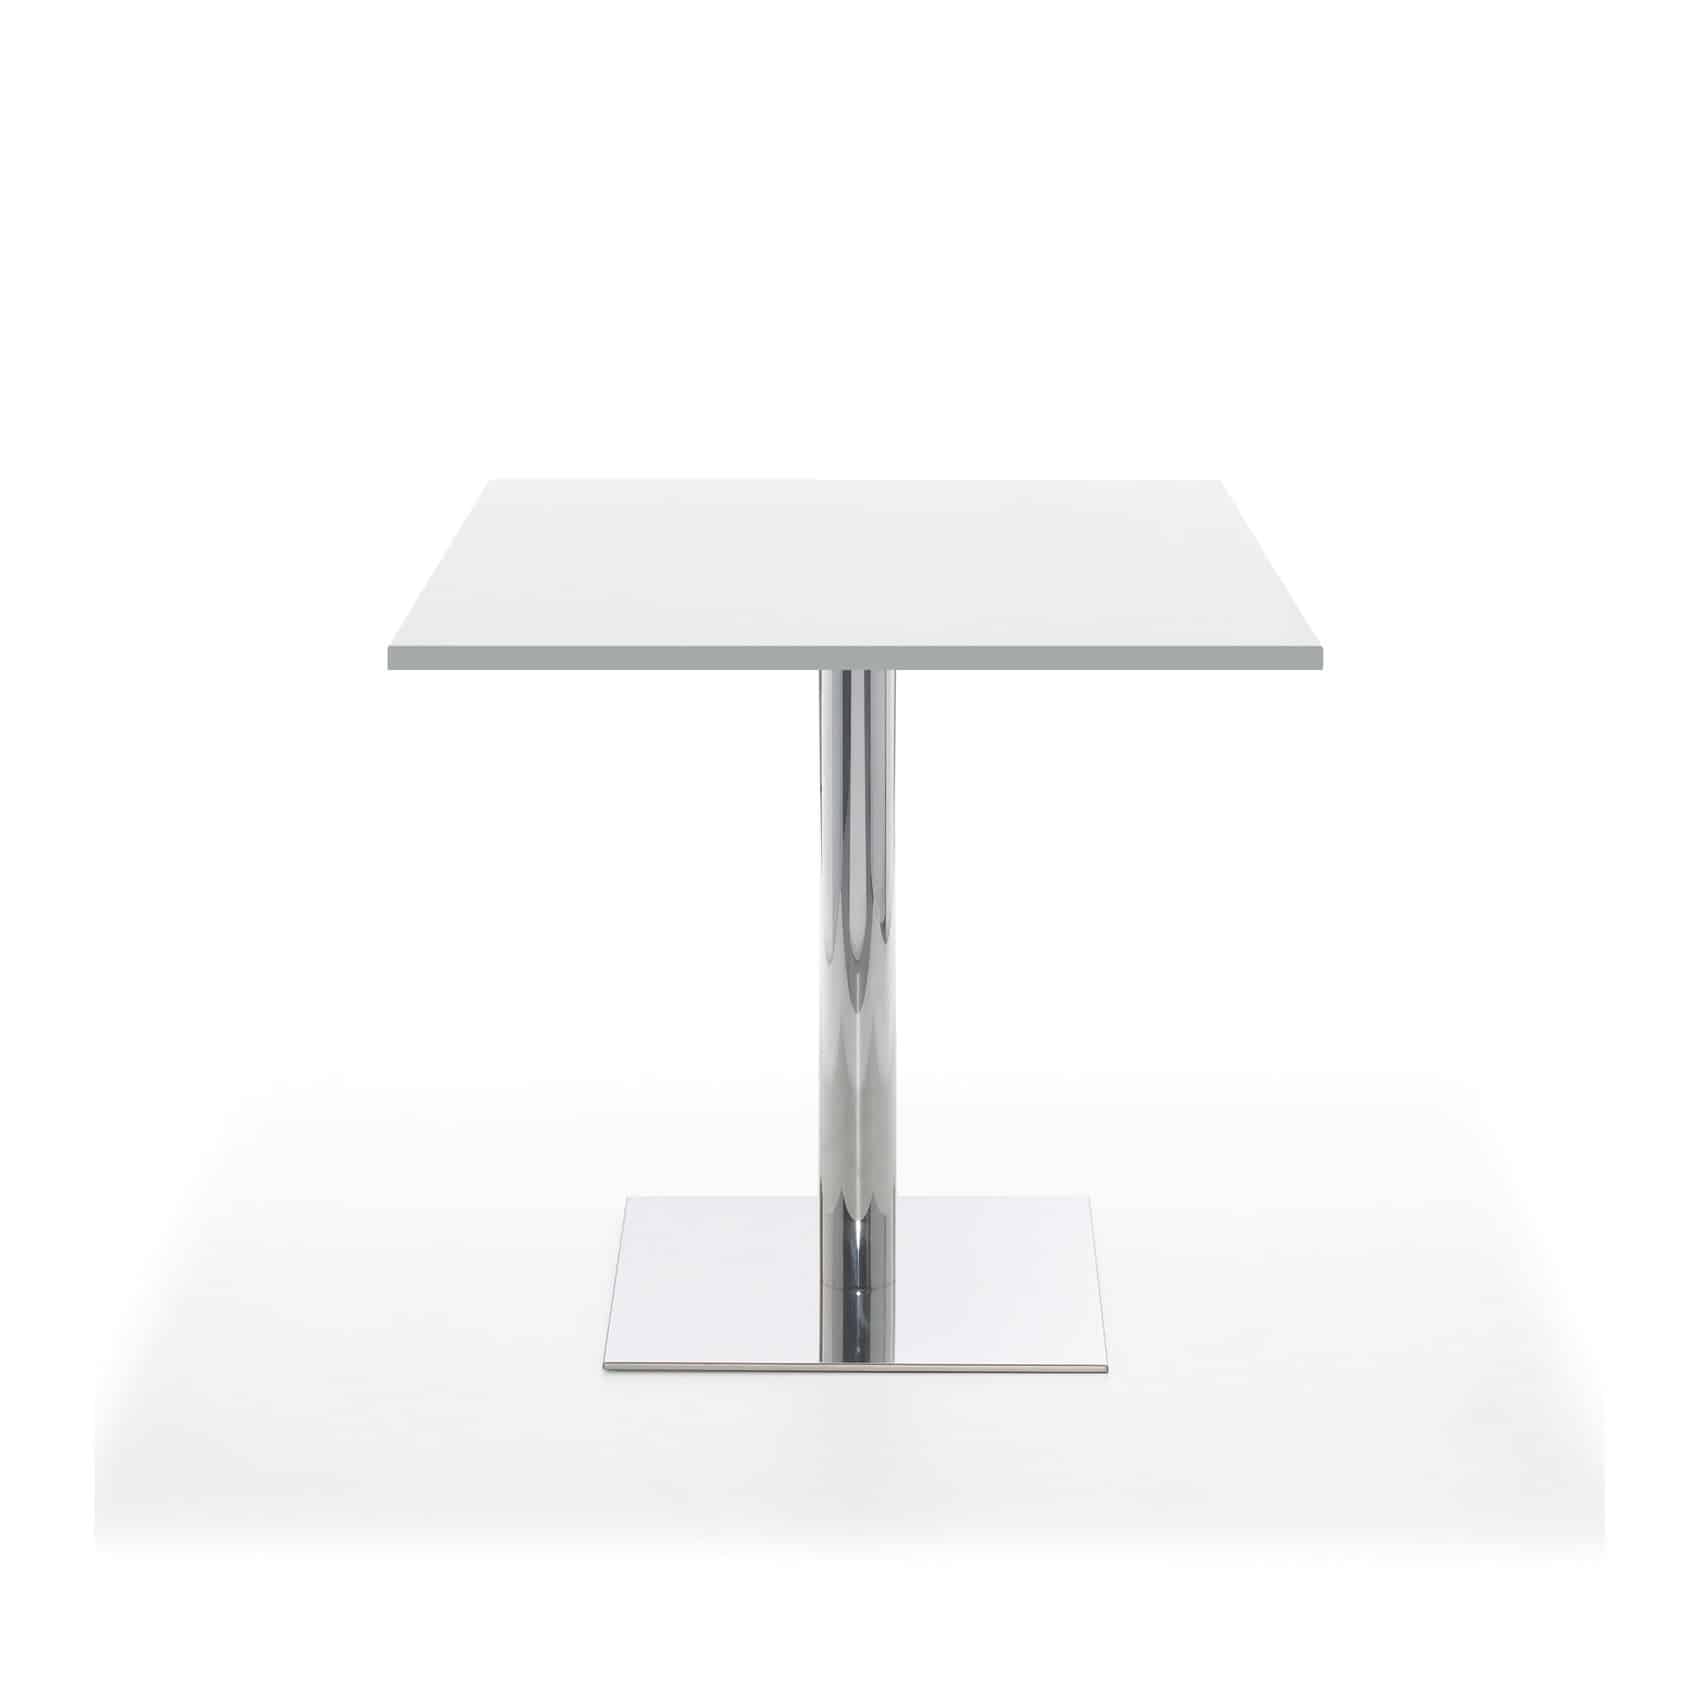 Paolo seatingtable KS 70 x 70 cm white